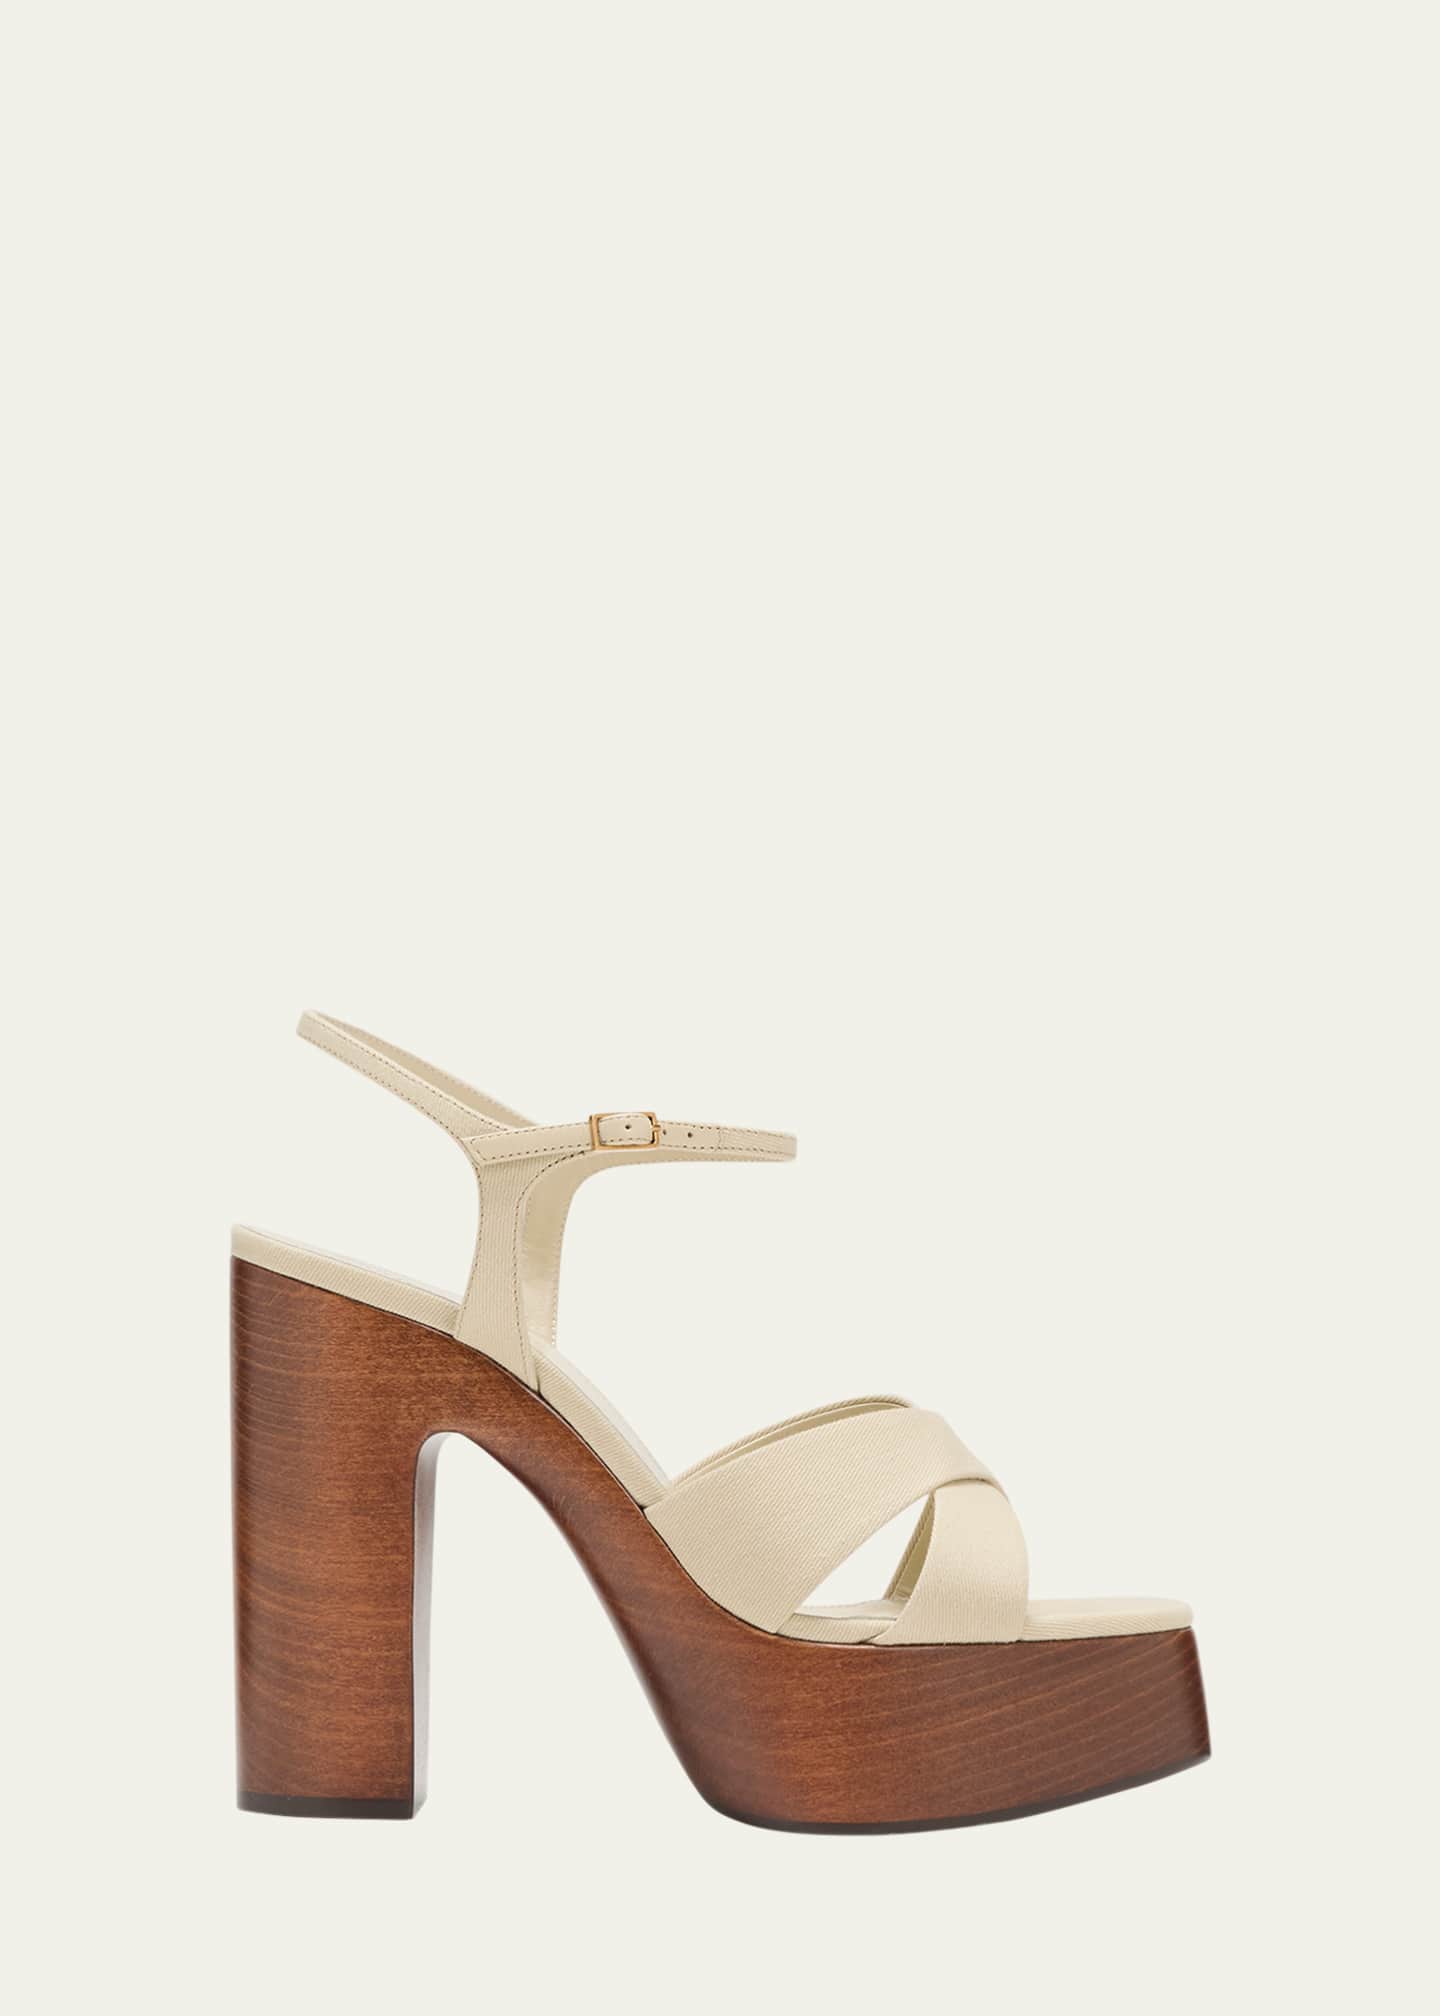 Saint Laurent Bianca Cotton Crisscross Platform Sandals - Bergdorf Goodman